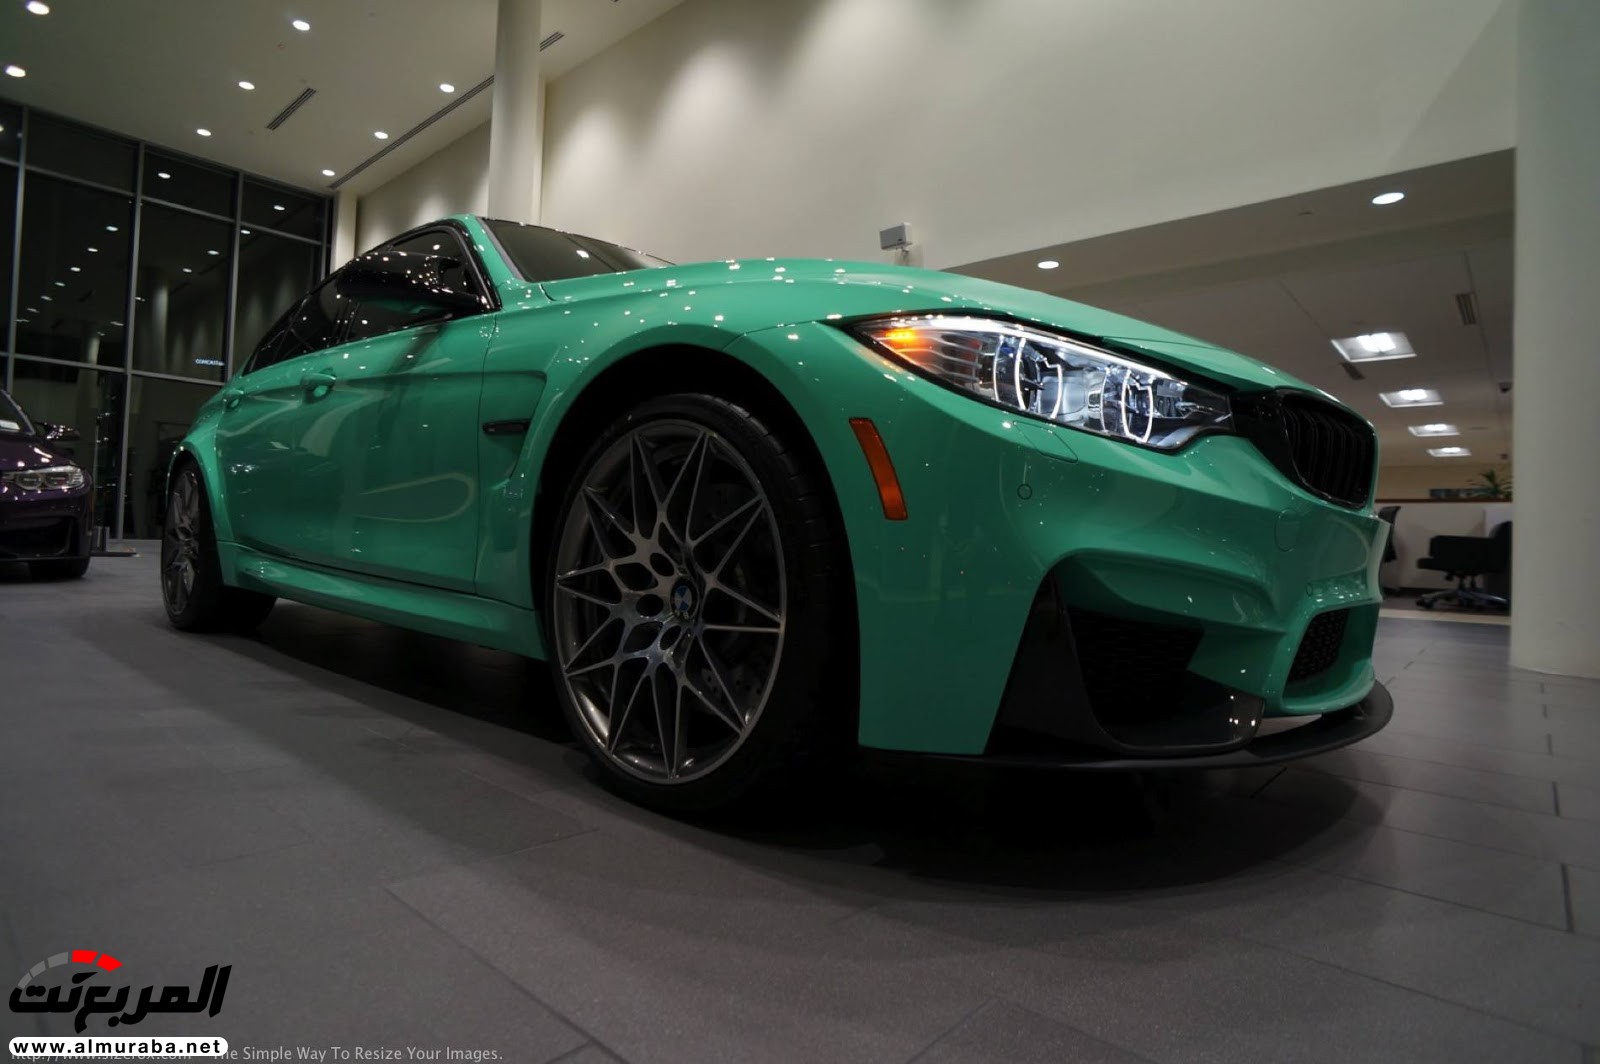 "بالصور" شاهد "بي إم دبليو" F80 M3 الخاصة بطلاء النعناع الأخضر BMW 109